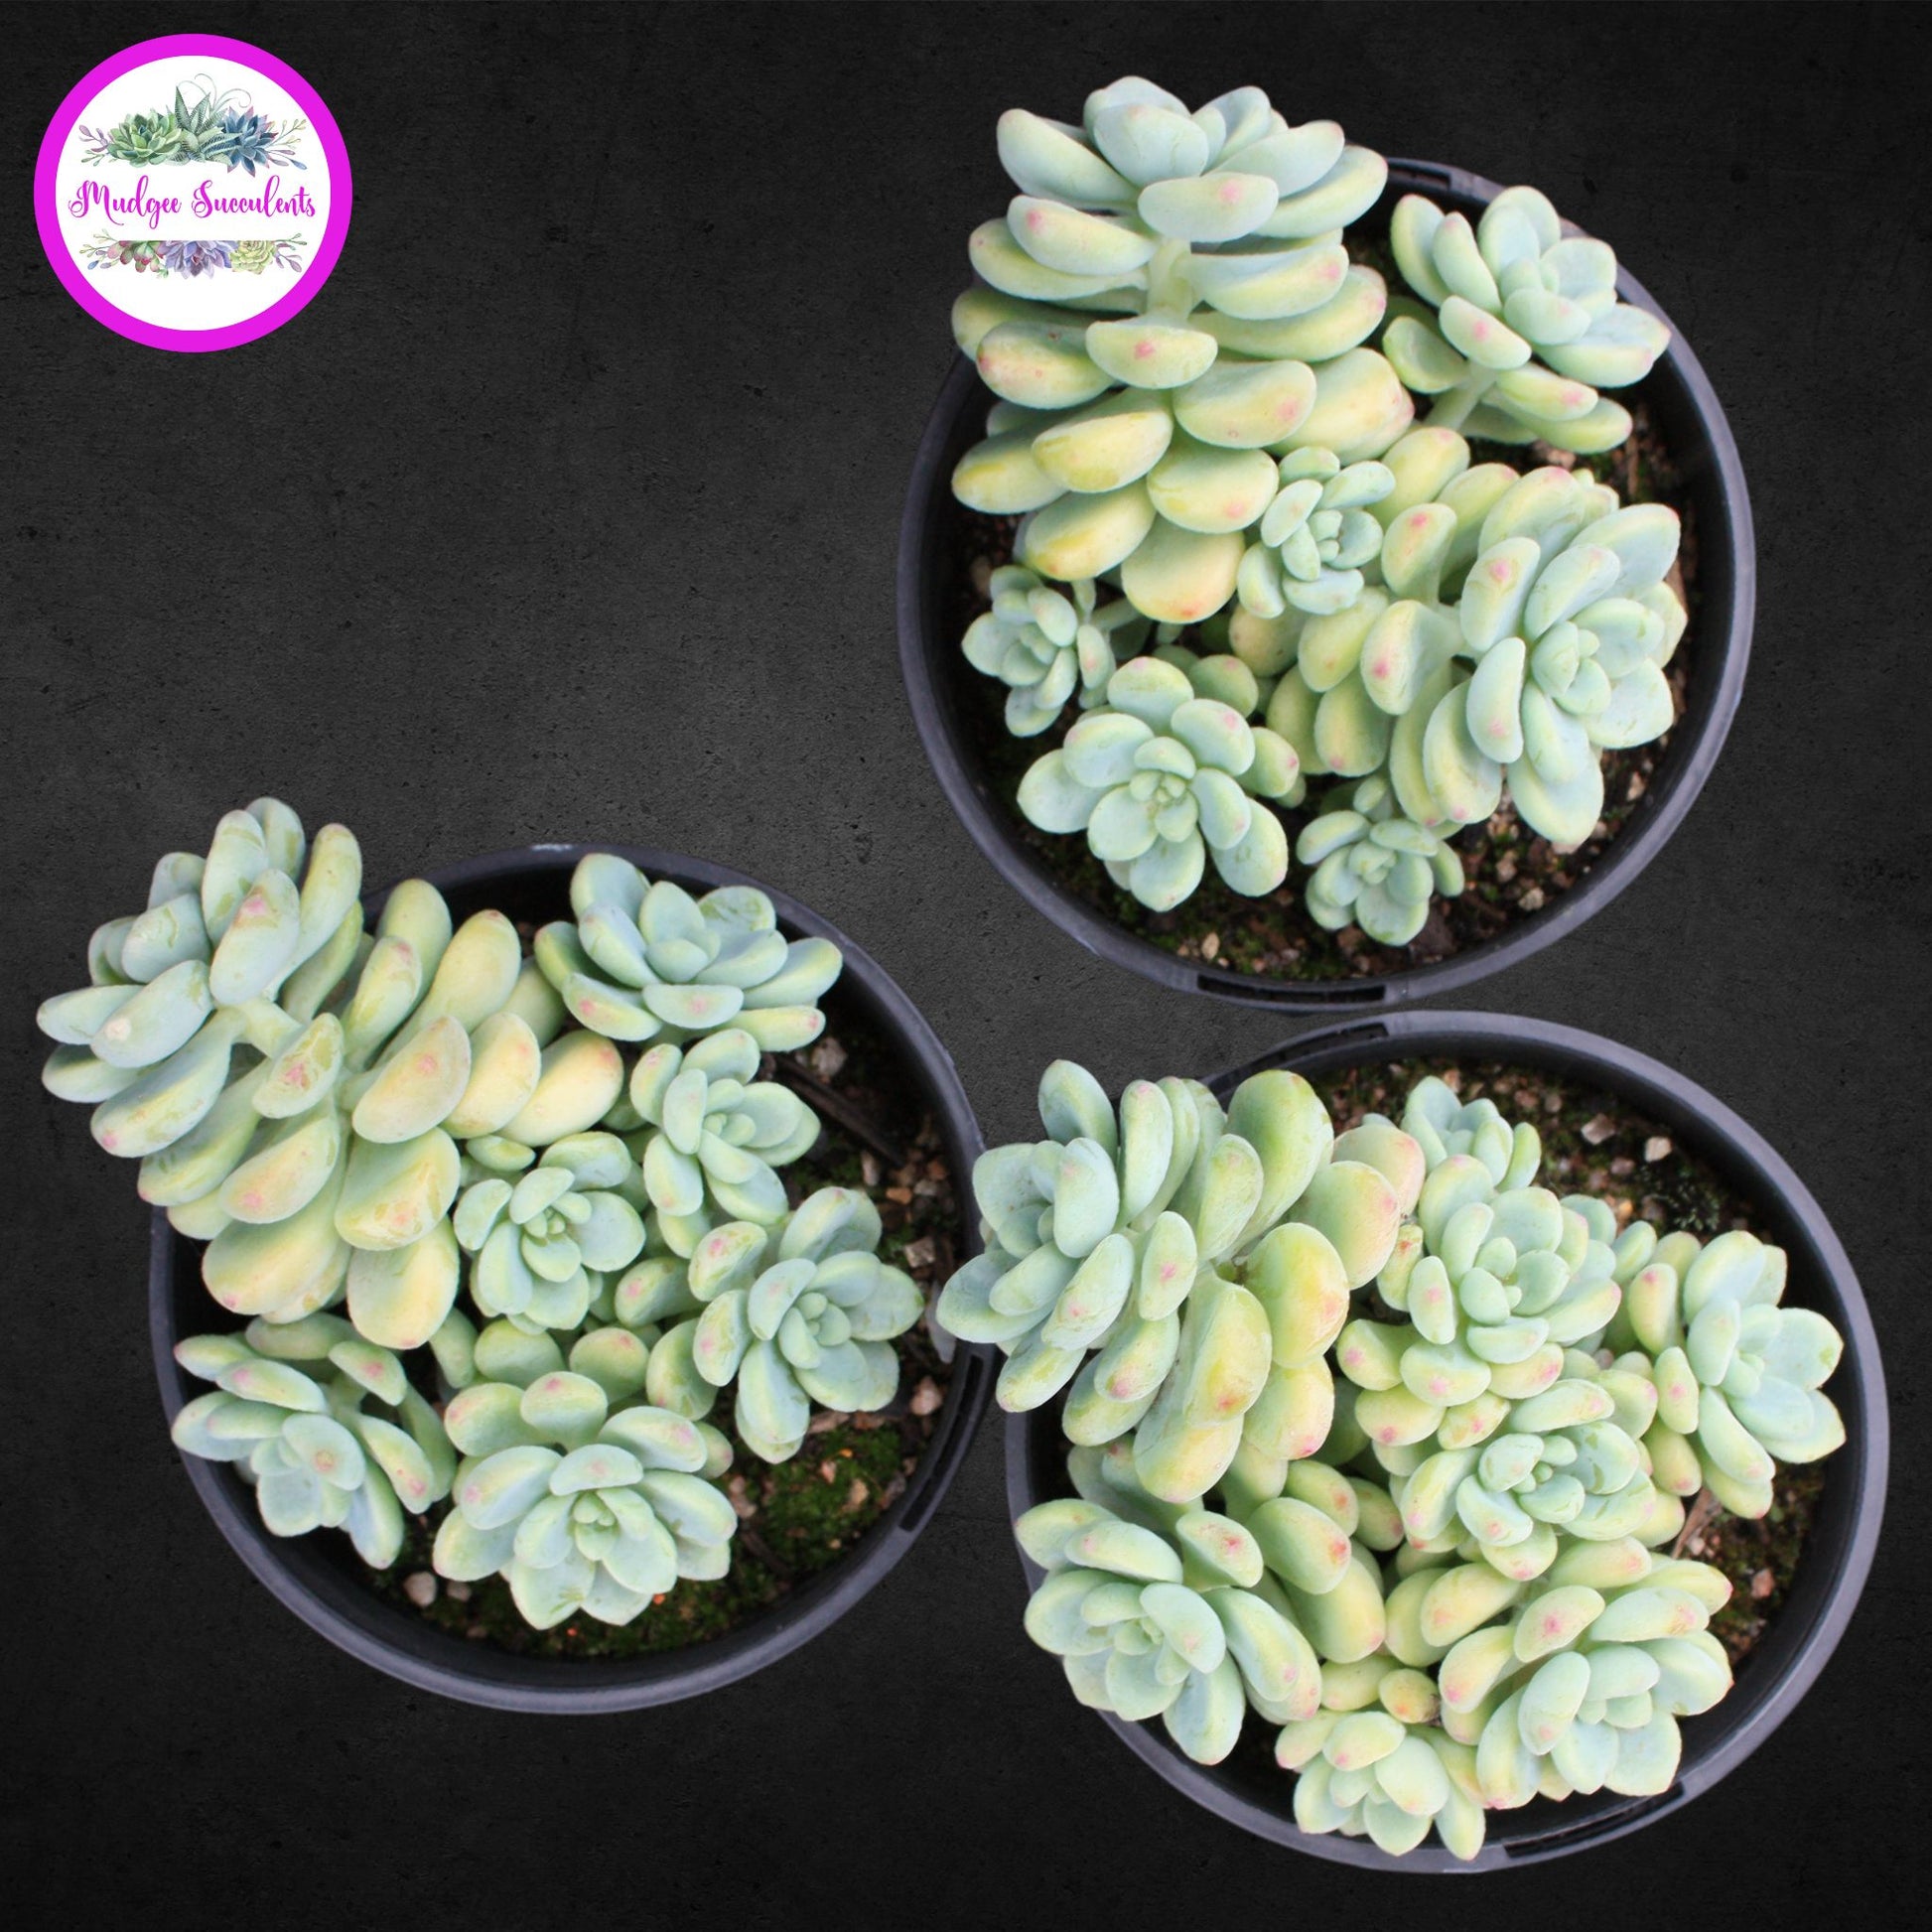 Succulent plants - Sedum clavatum - Mudgee Succulents Online Shop